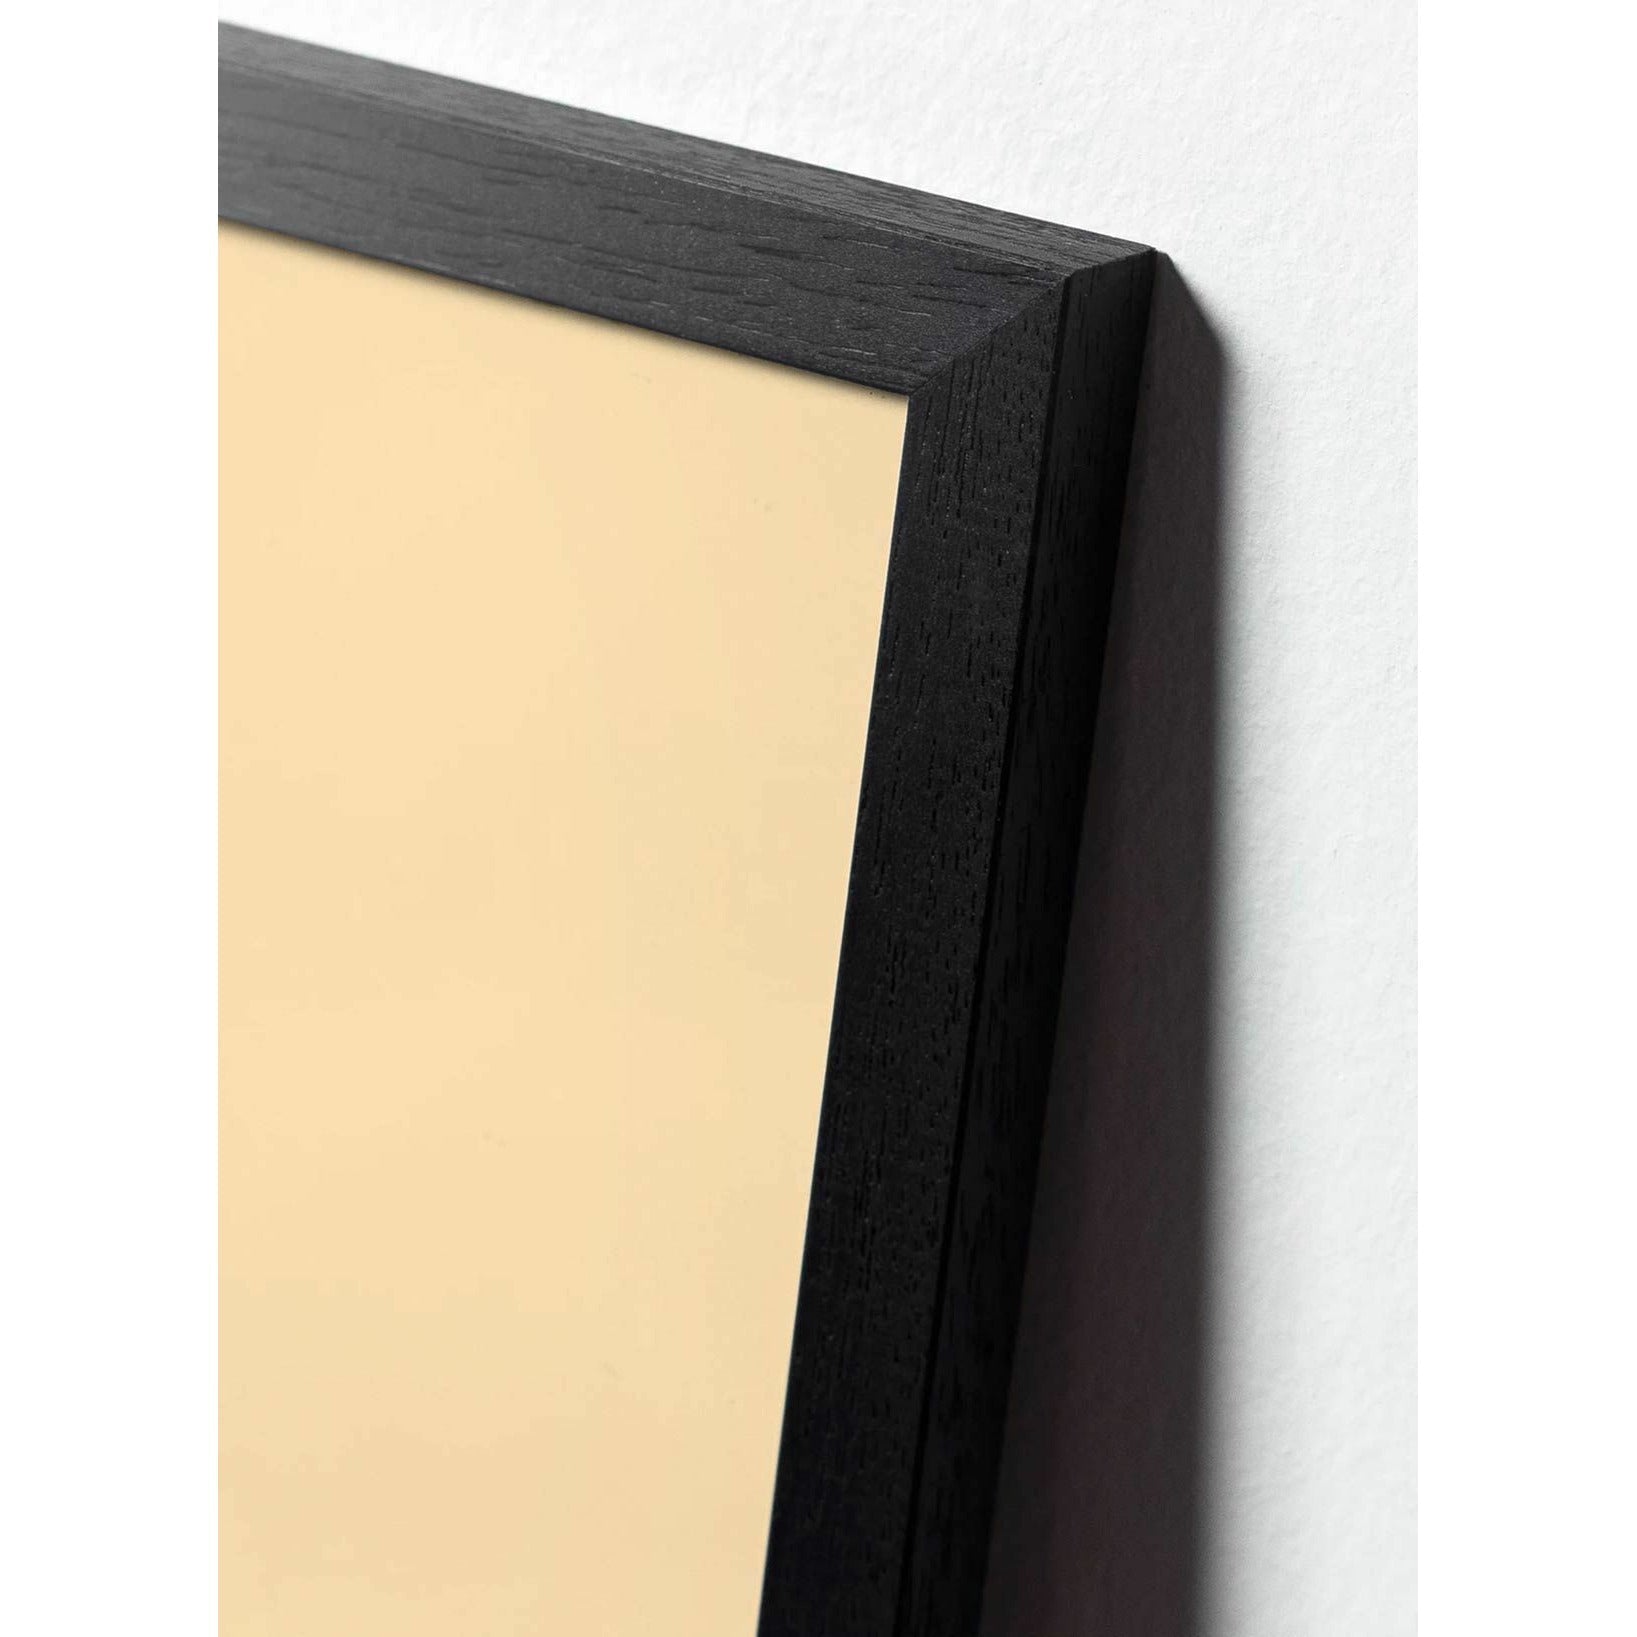 brainchild Klassisches Poster von Kiefernkegel, Rahmen aus schwarz lackiertem Holz 30x40 cm, sandfarbener Hintergrund